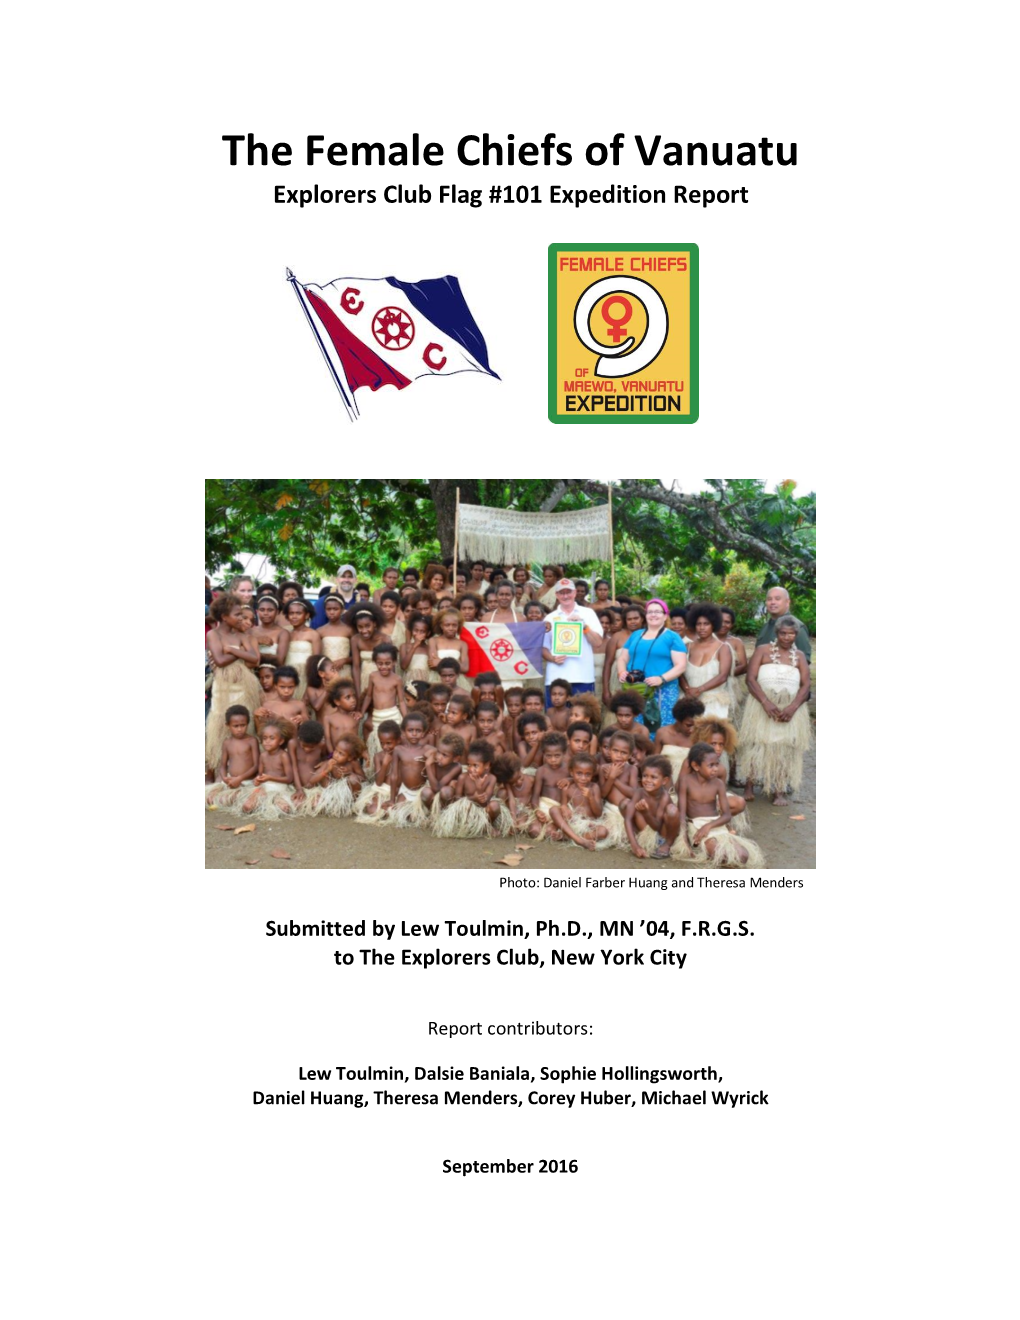 The Female Chiefs of Vanuatu Explorers Club Flag #101 Expedition Report